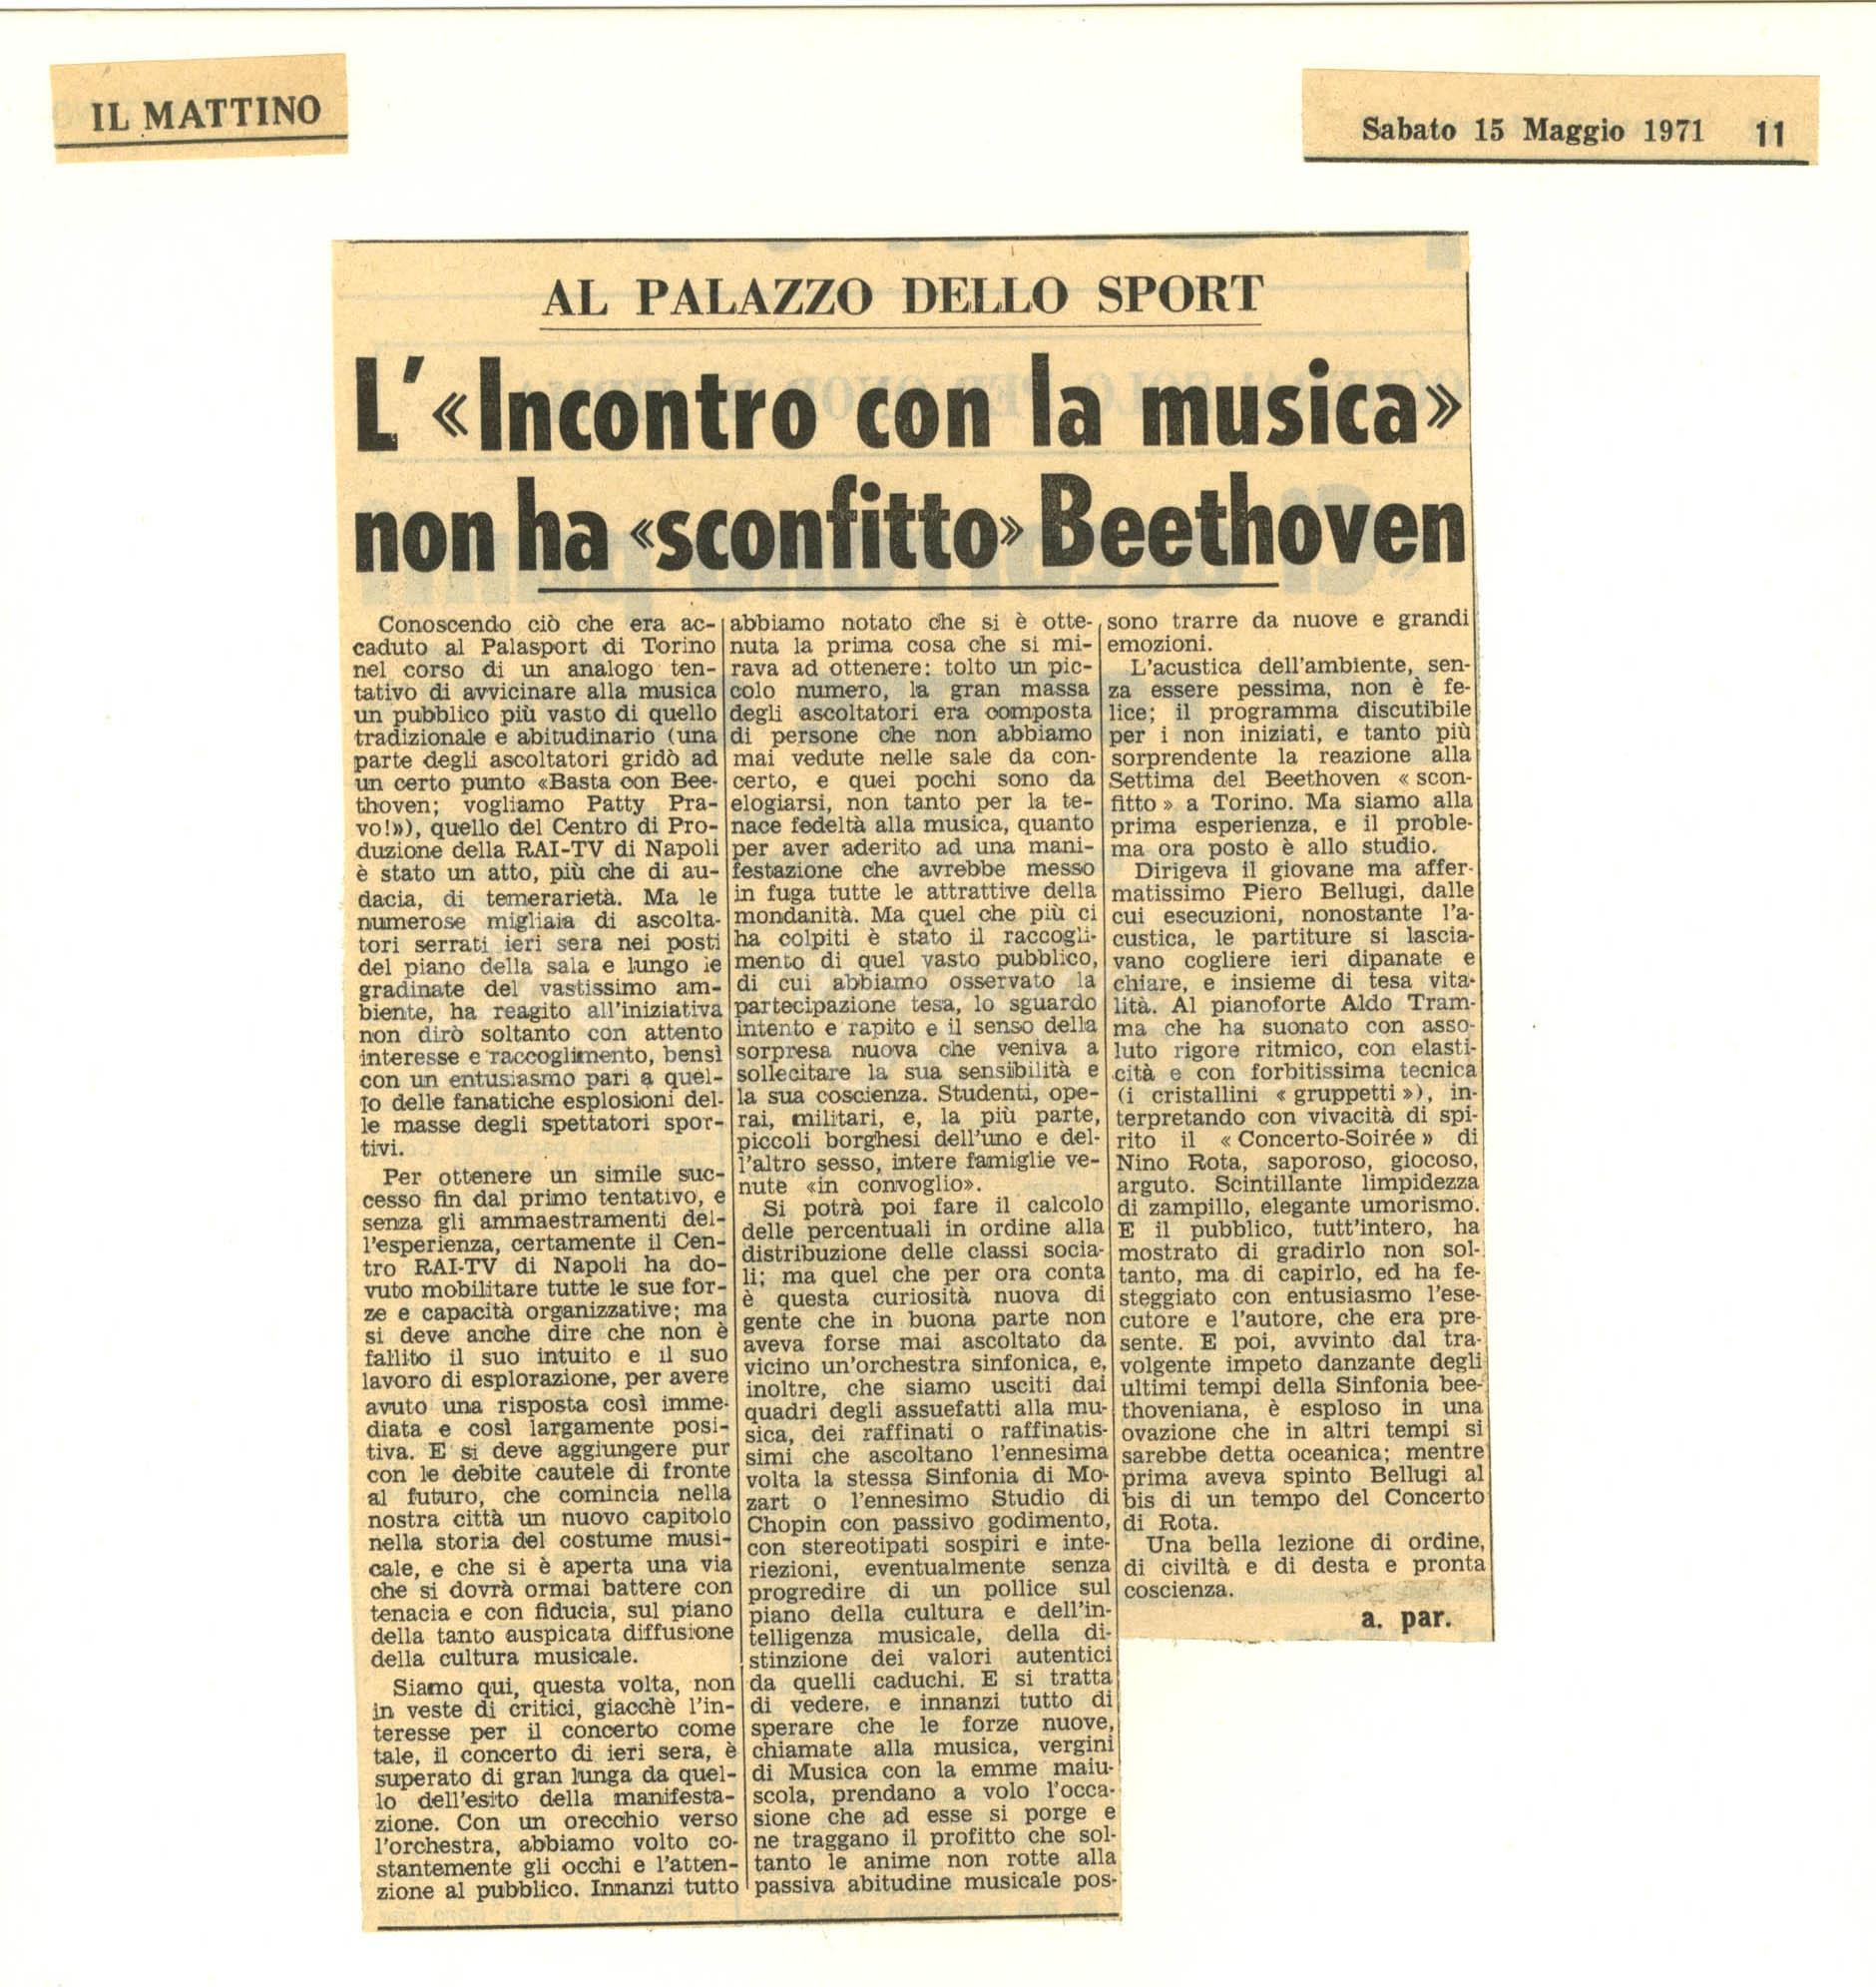 Al Palazzo dello Sport. L' 'Incontro con la musica' non ha 'sconfitto' Beethoven
				 15 maggio 1971